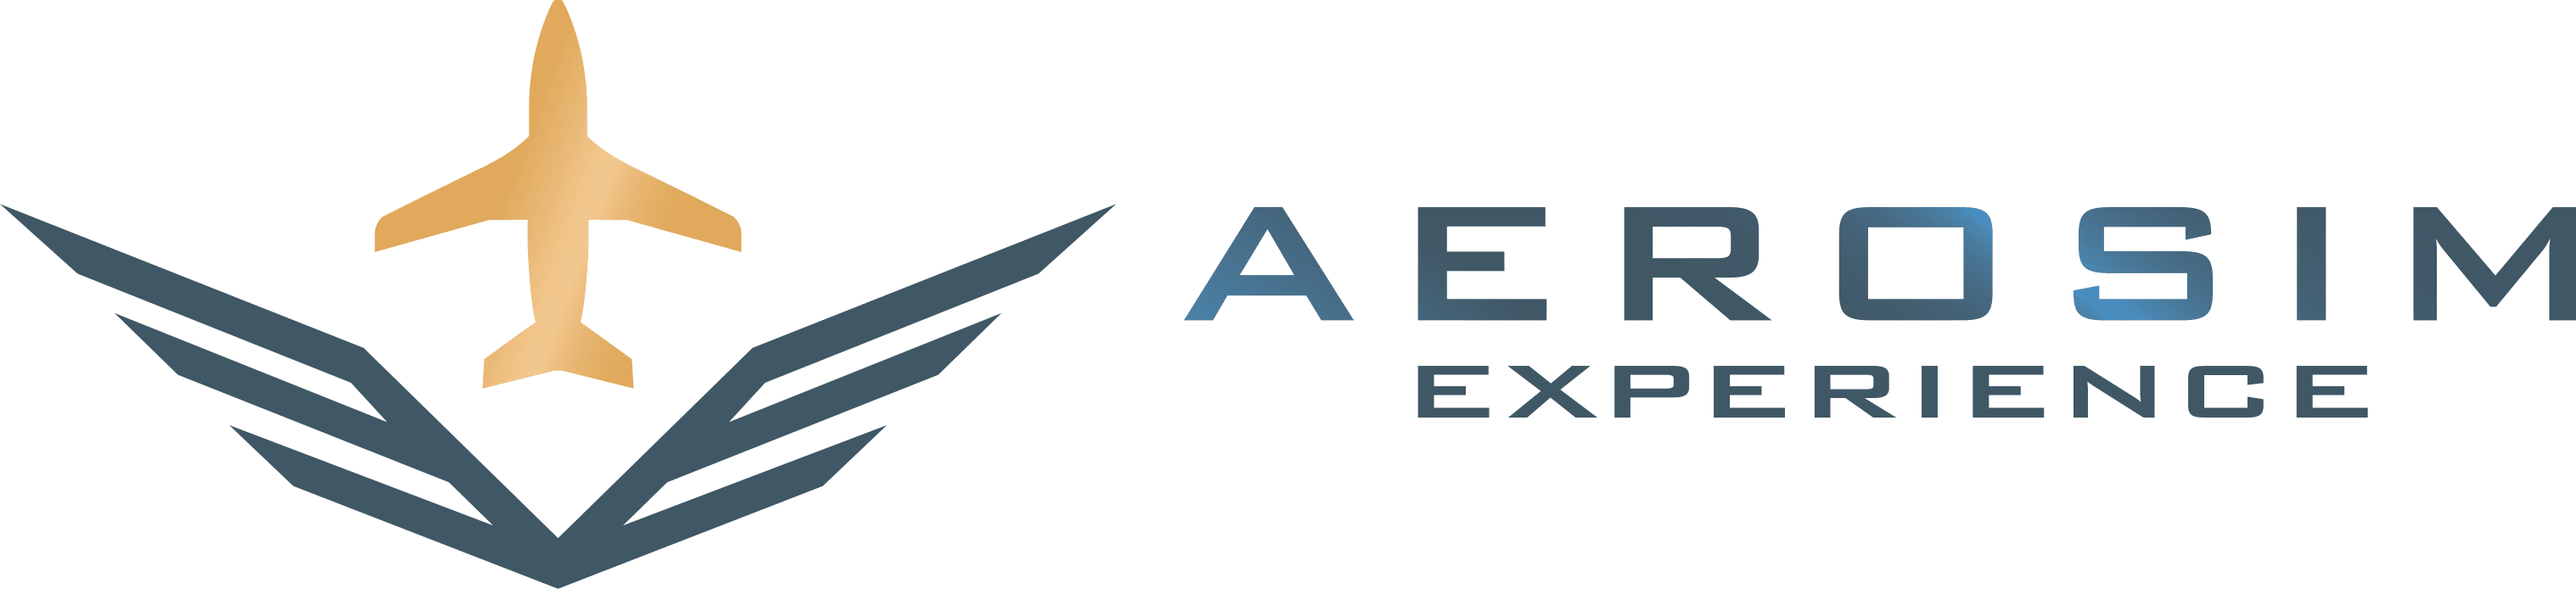 Aerosim Experience Vancouver